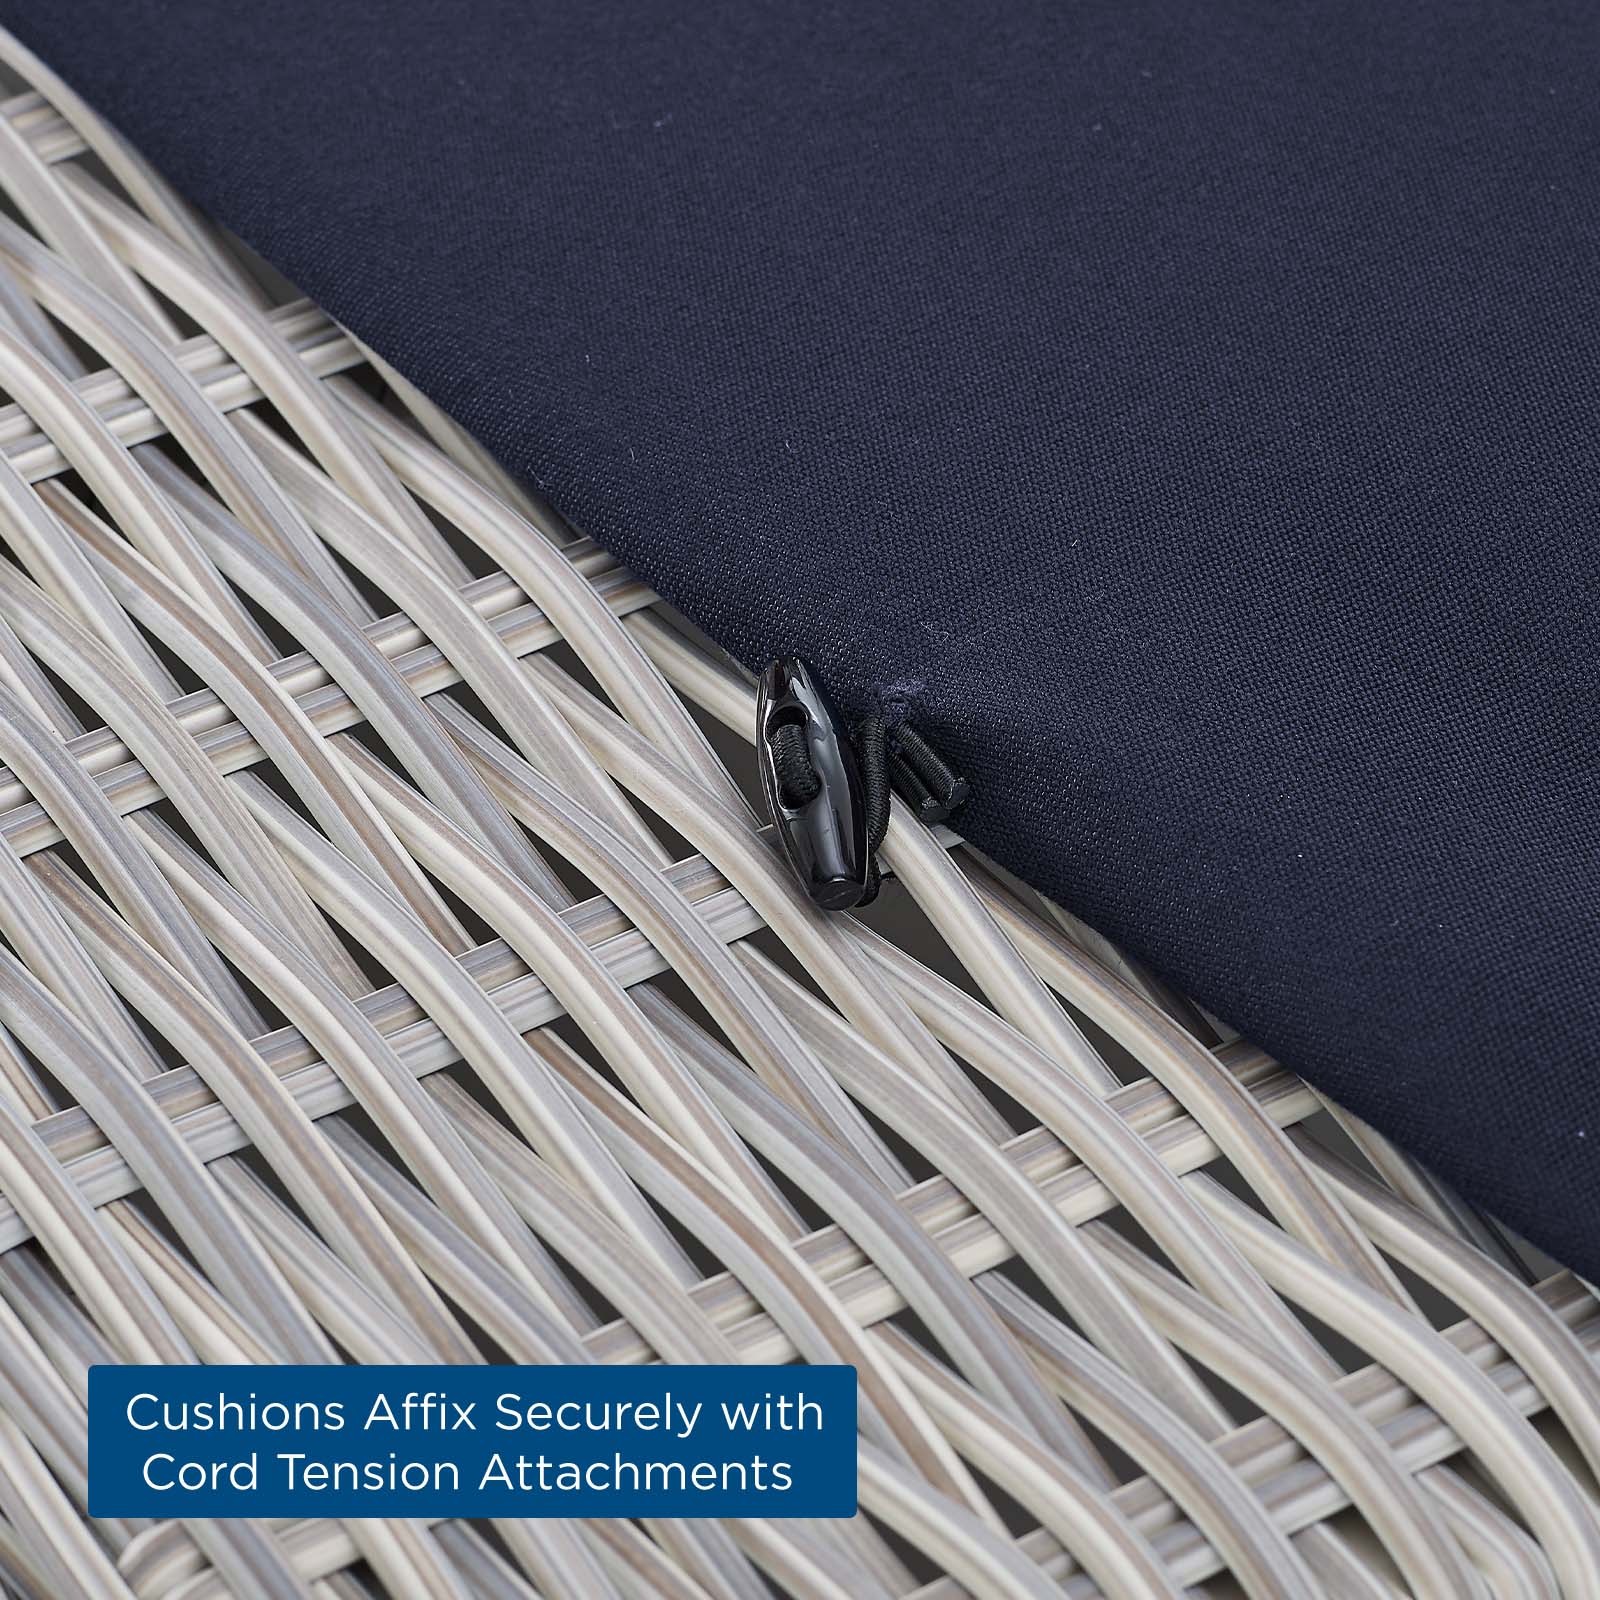 Modway - Conway Sunbrella® Outdoor Patio Wicker Rattan Armless Chair - EEI-3980